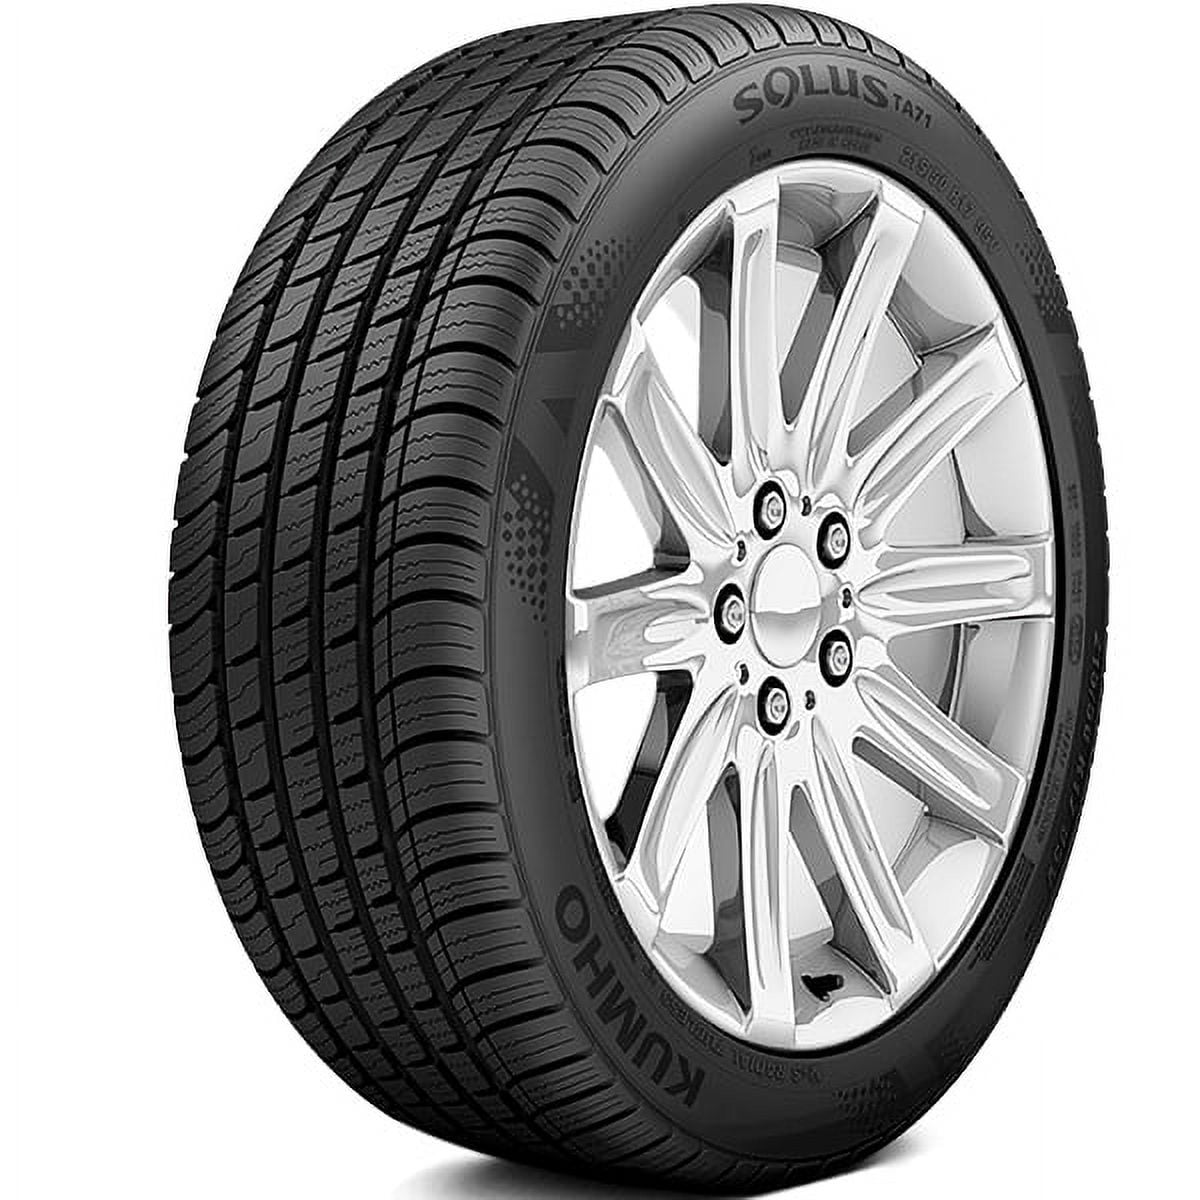 Kumho Solus TA71 205/55R16 91V All-Season - Tire